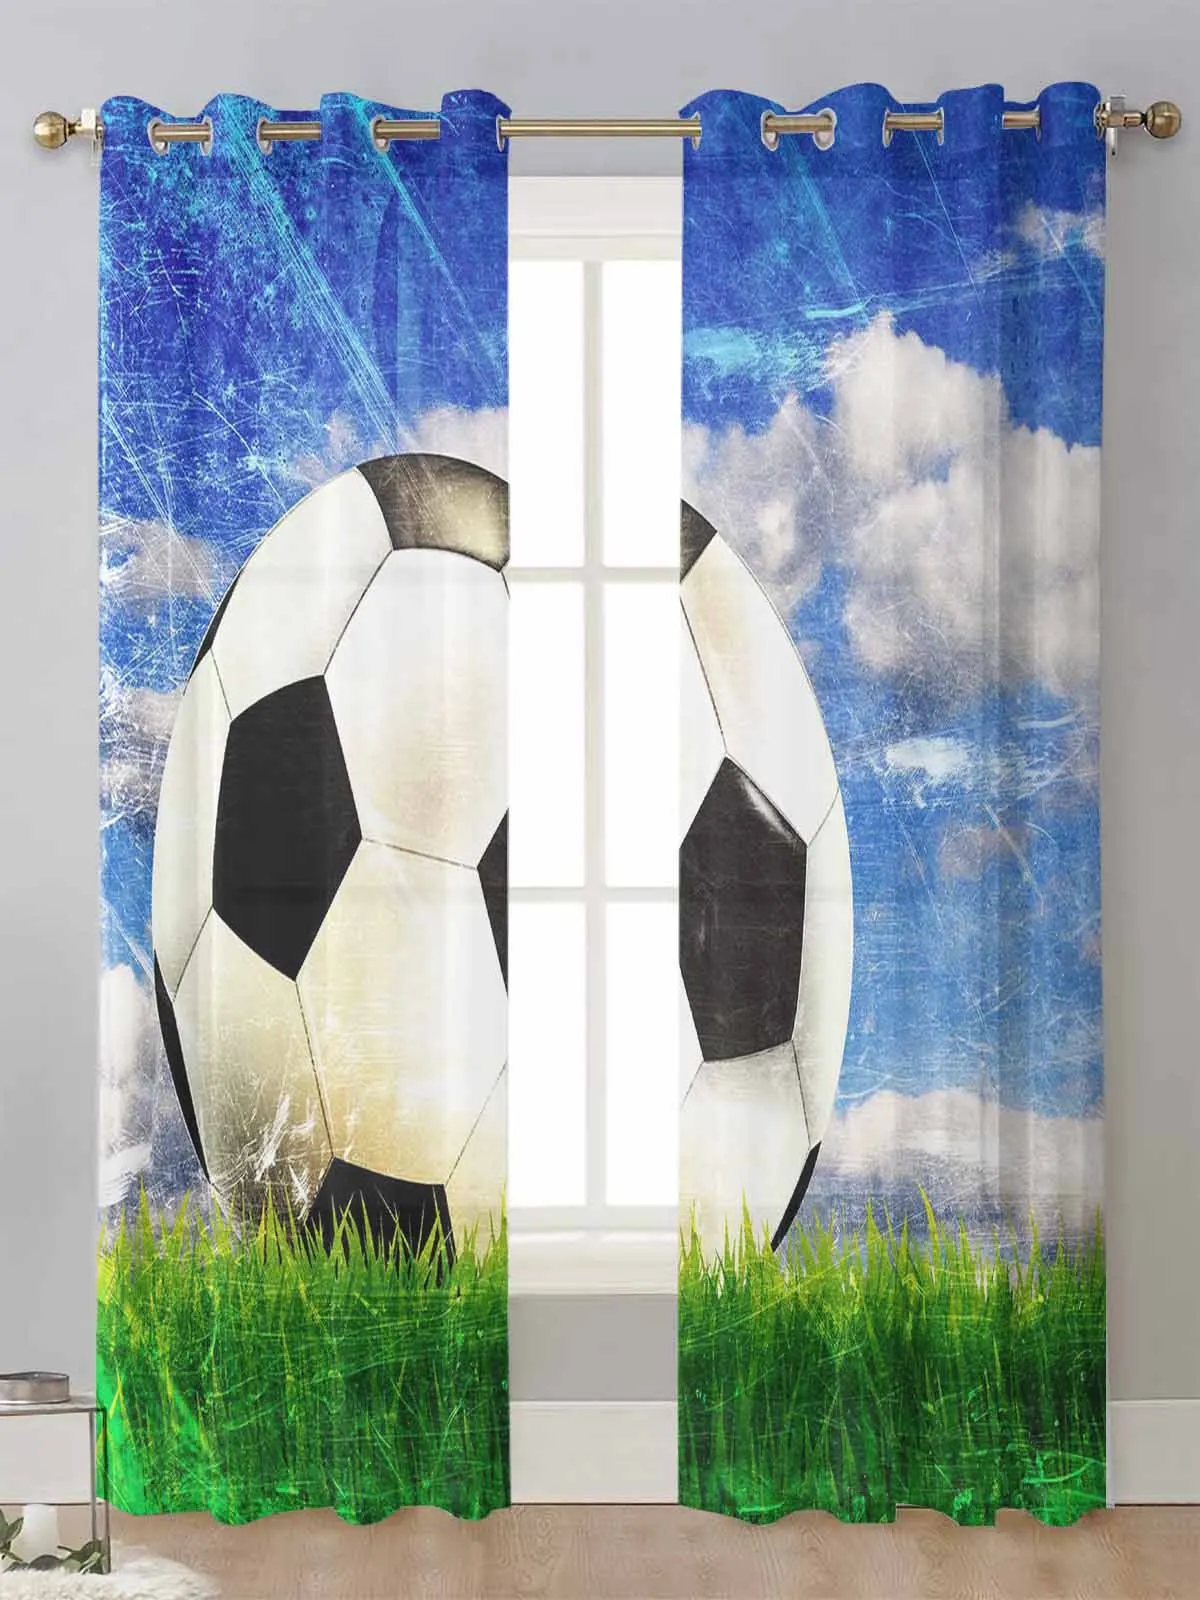 

Прозрачные шторы для футбола, небо, облака, трава, футбол, шторы для гостиной, окна, вуаль, тюль, занавески, Декор для дома